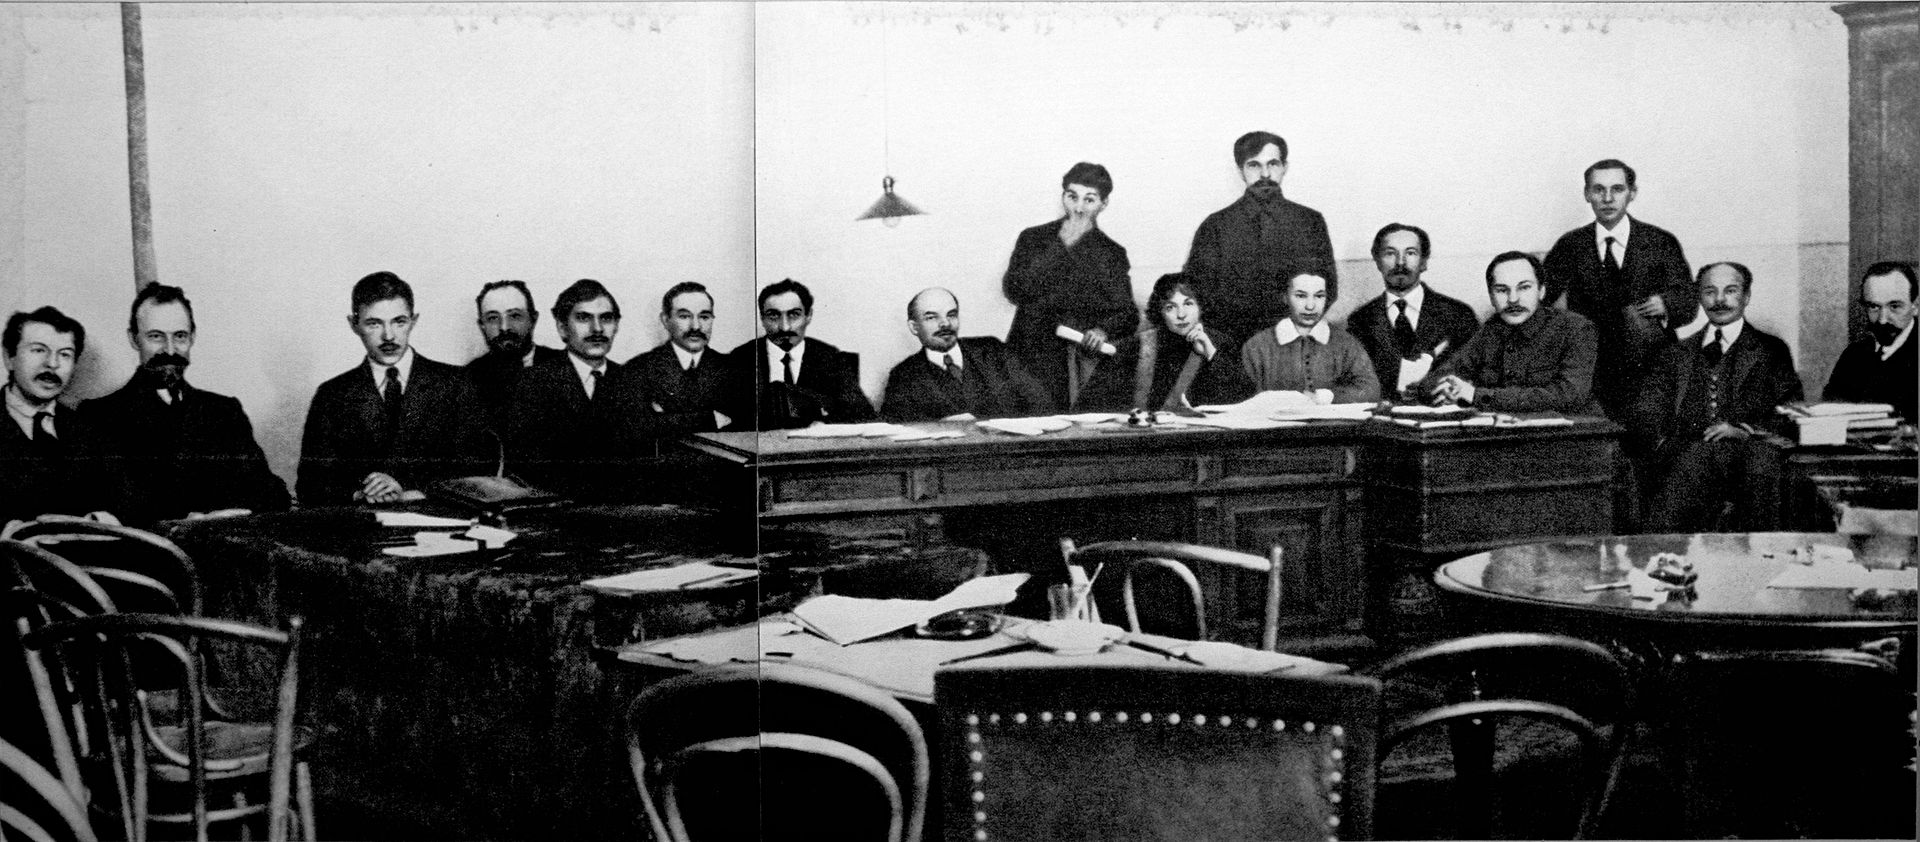 Chronique de la Révolution d'Octobre 1917 : Il y a 100 ans, le soviet crée un « gouvernement ouvrier et paysan provisoire »